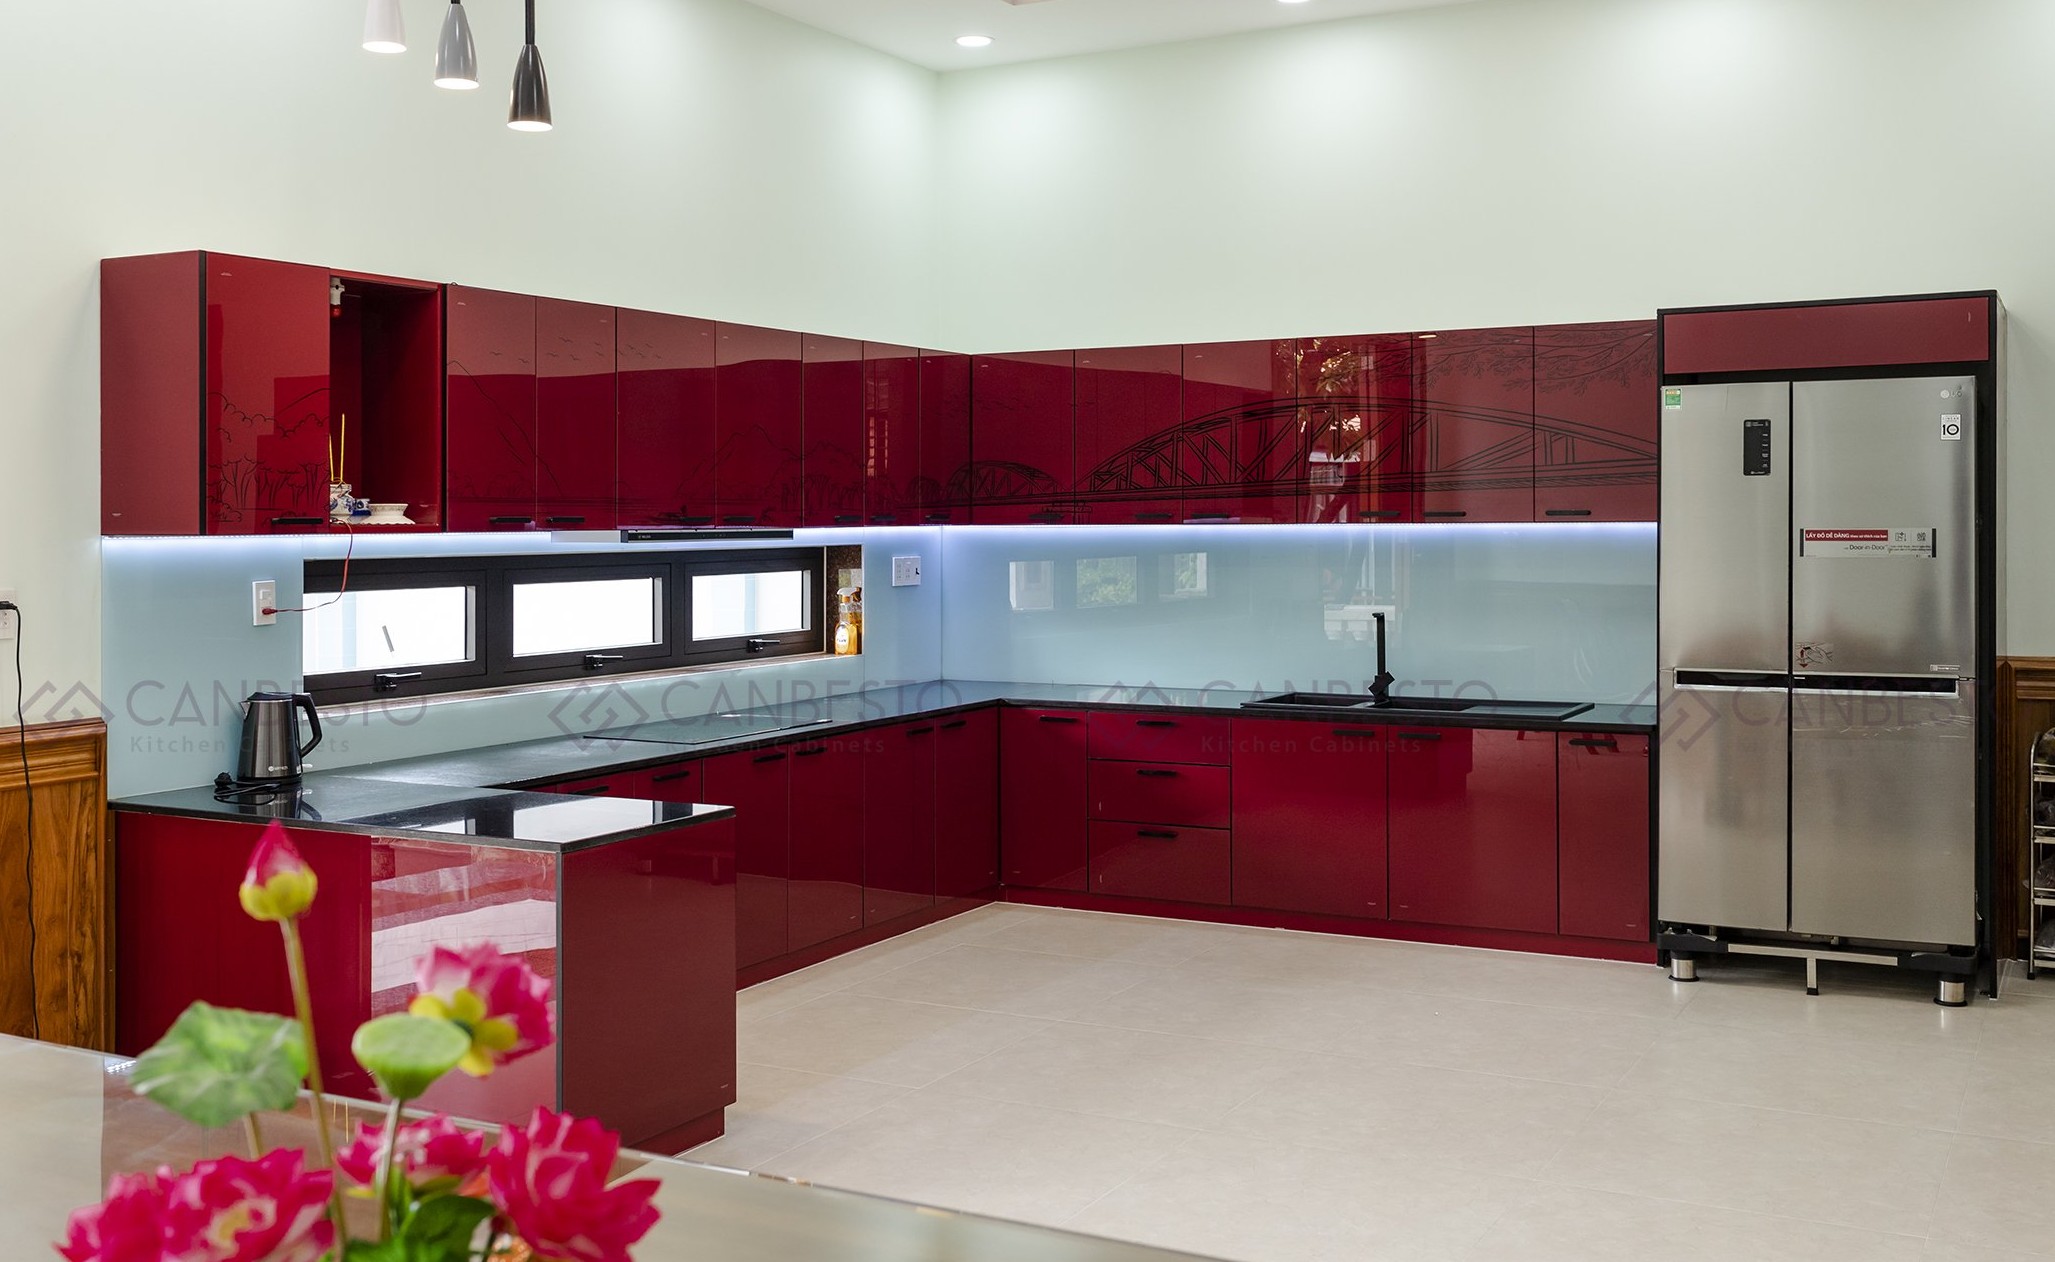 Canbesto: Tủ bếp nhôm kính, thiết kế nội thất tại Biên Hòa.